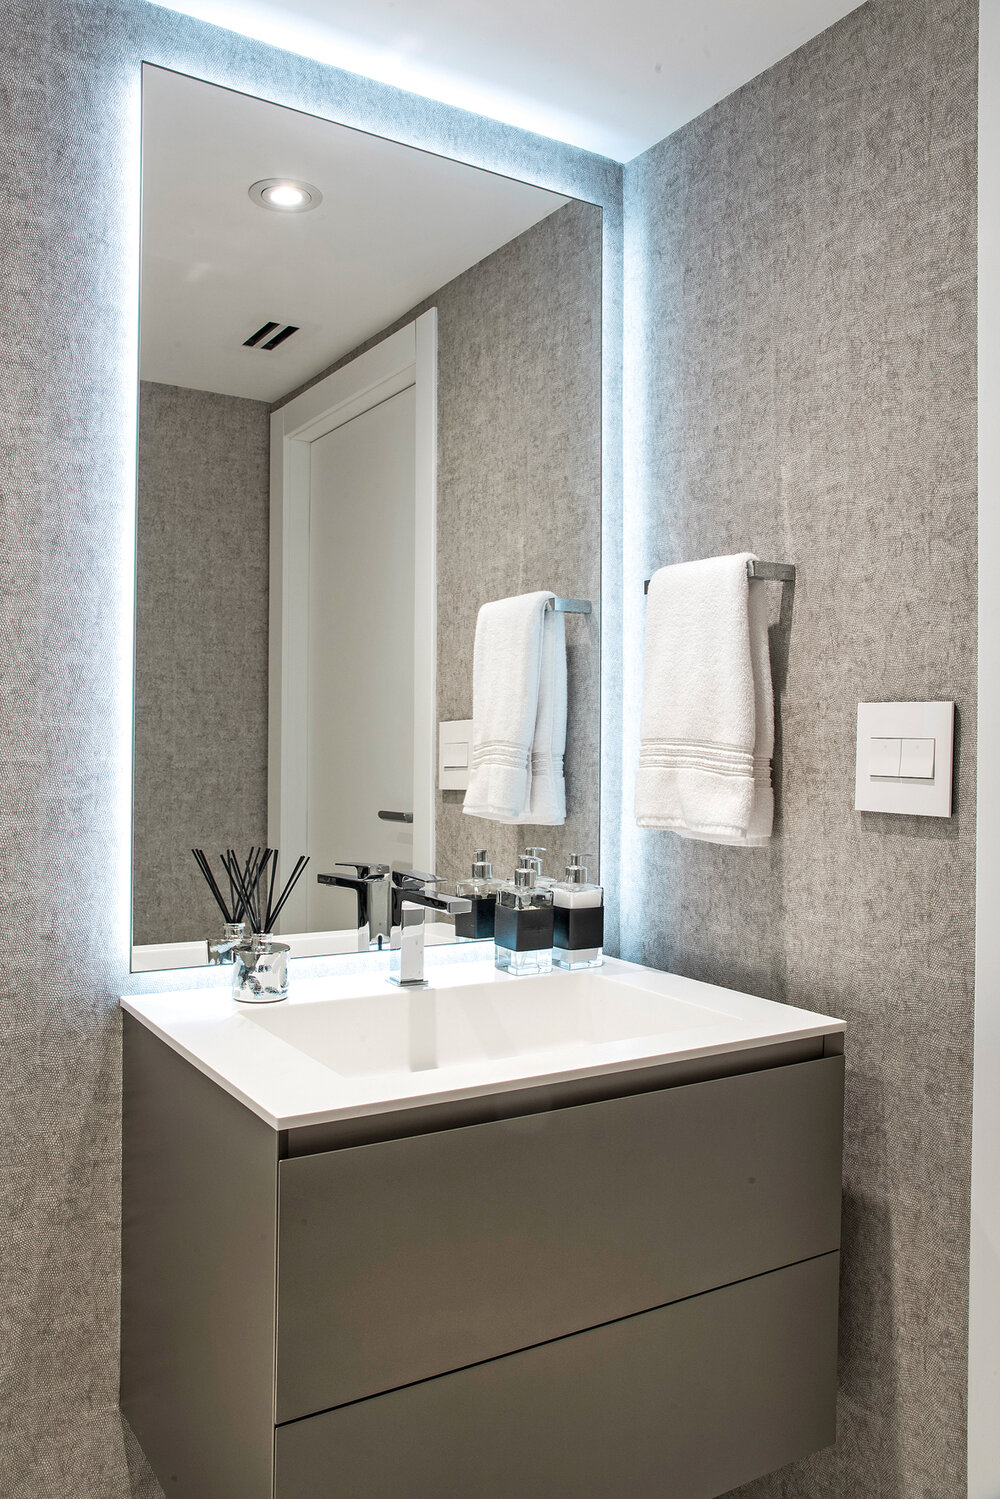 En los baños la diseñadora enteló y sumó un espejo iluminado por detrás que “da un toque de diseño y ambientación